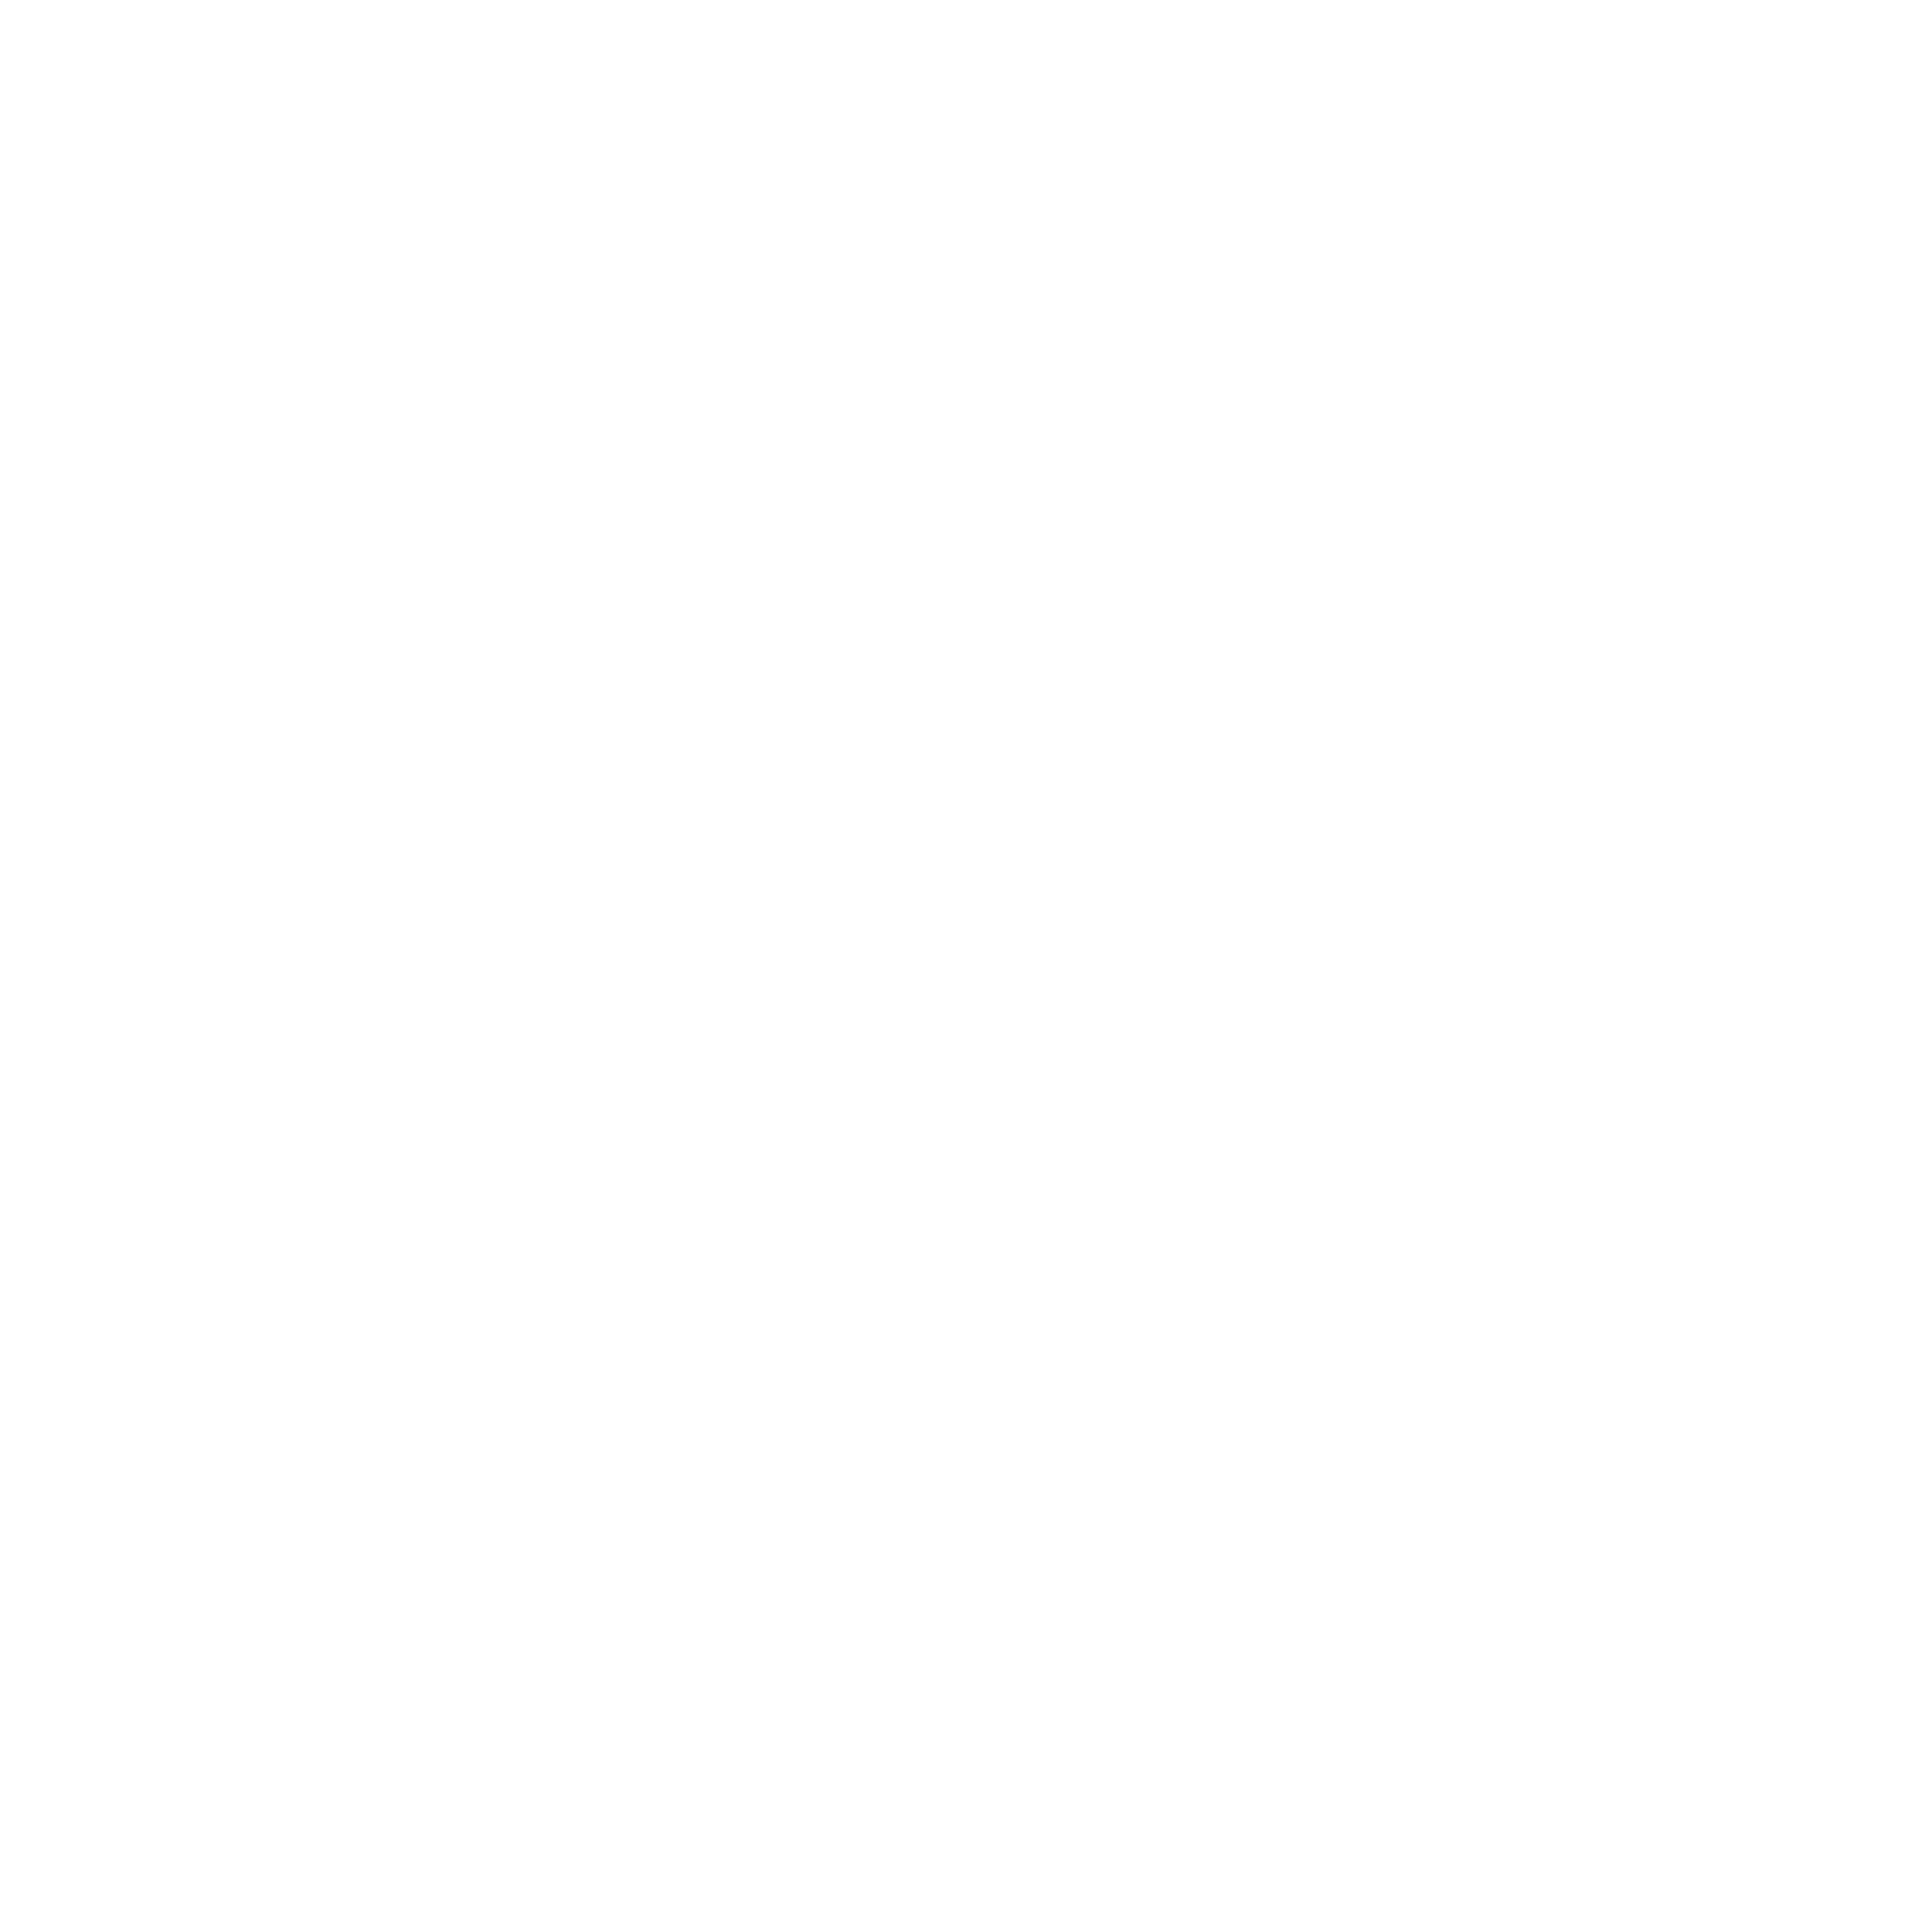 Litera Q